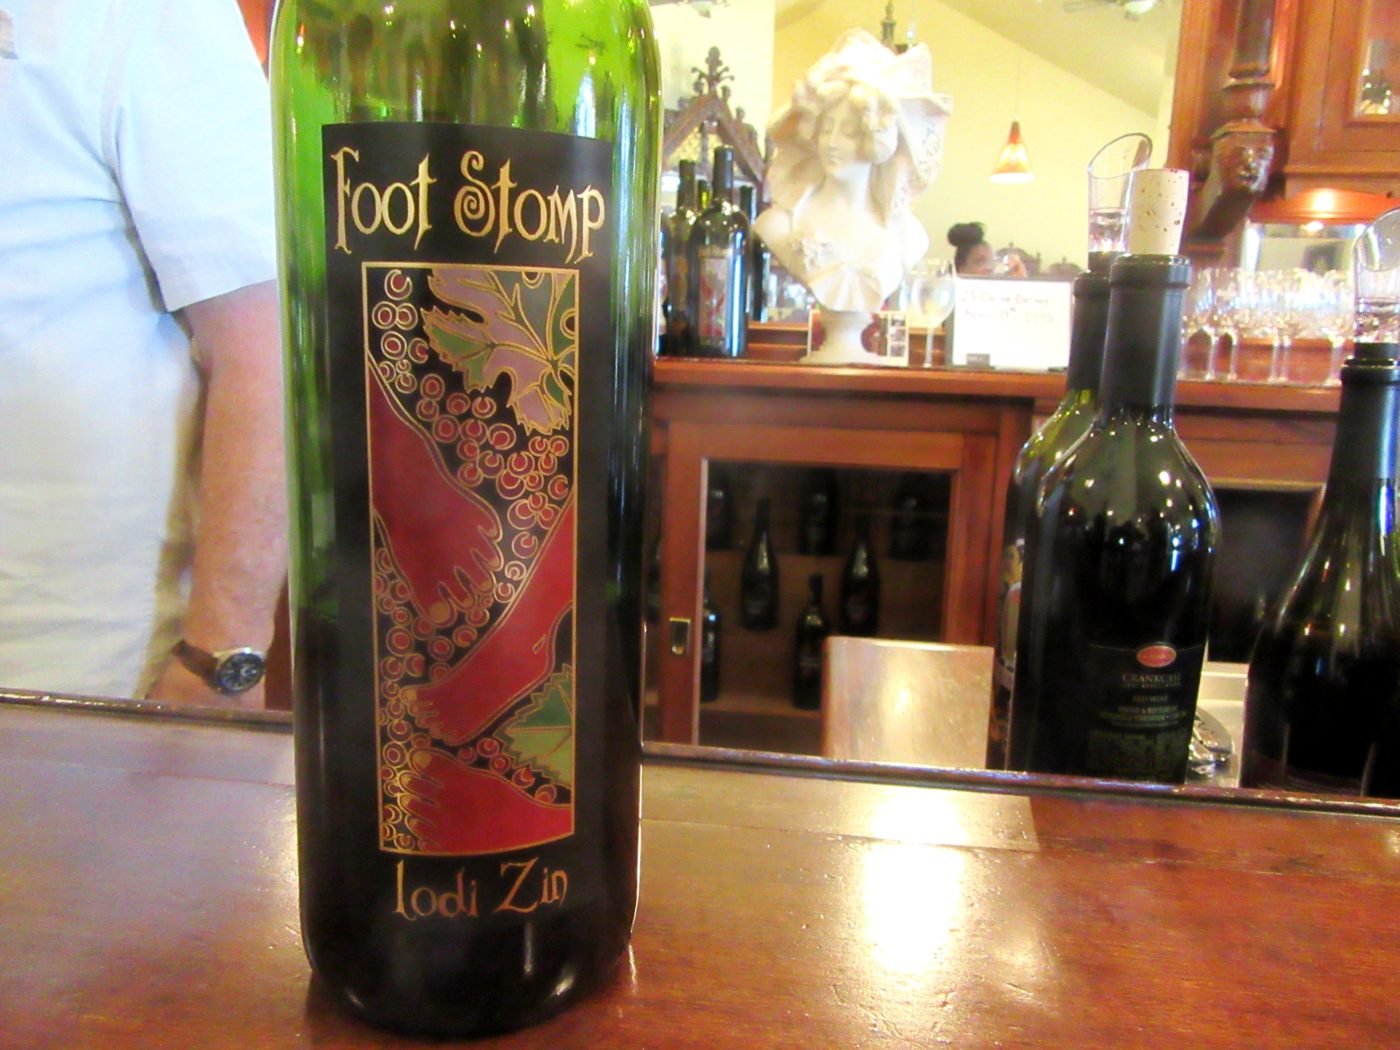 Berghold Estate Vineyards, Foot Stomp Zinfandel 2013, Lodi, California, Wine Casual